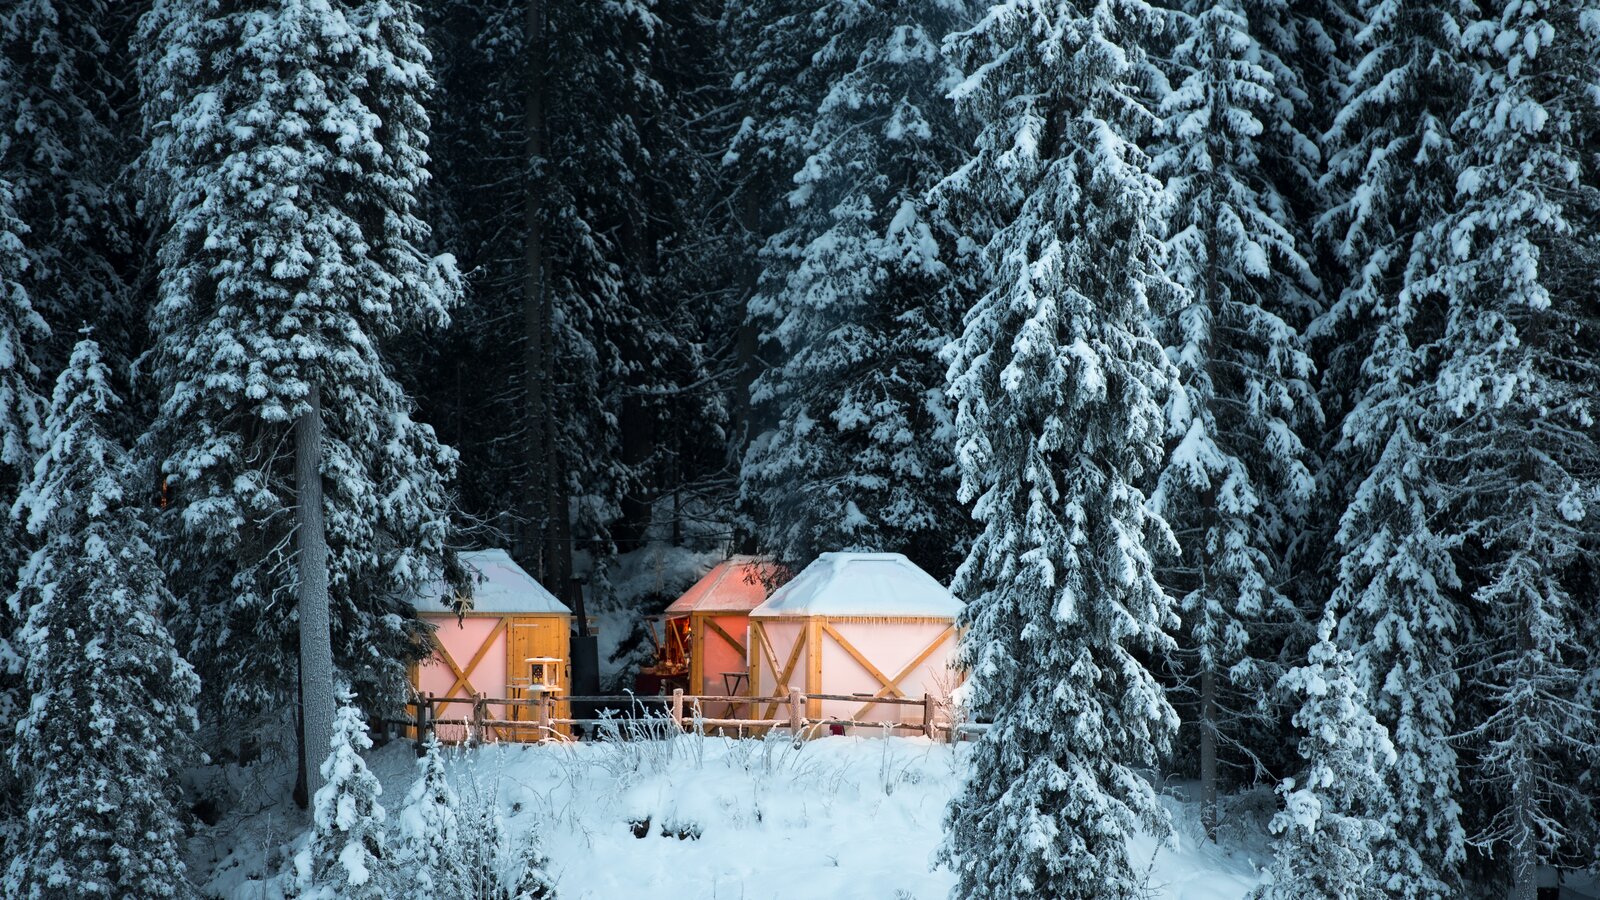 Casette illuminati nella foresta invernale | © Armin Mair (Indio)